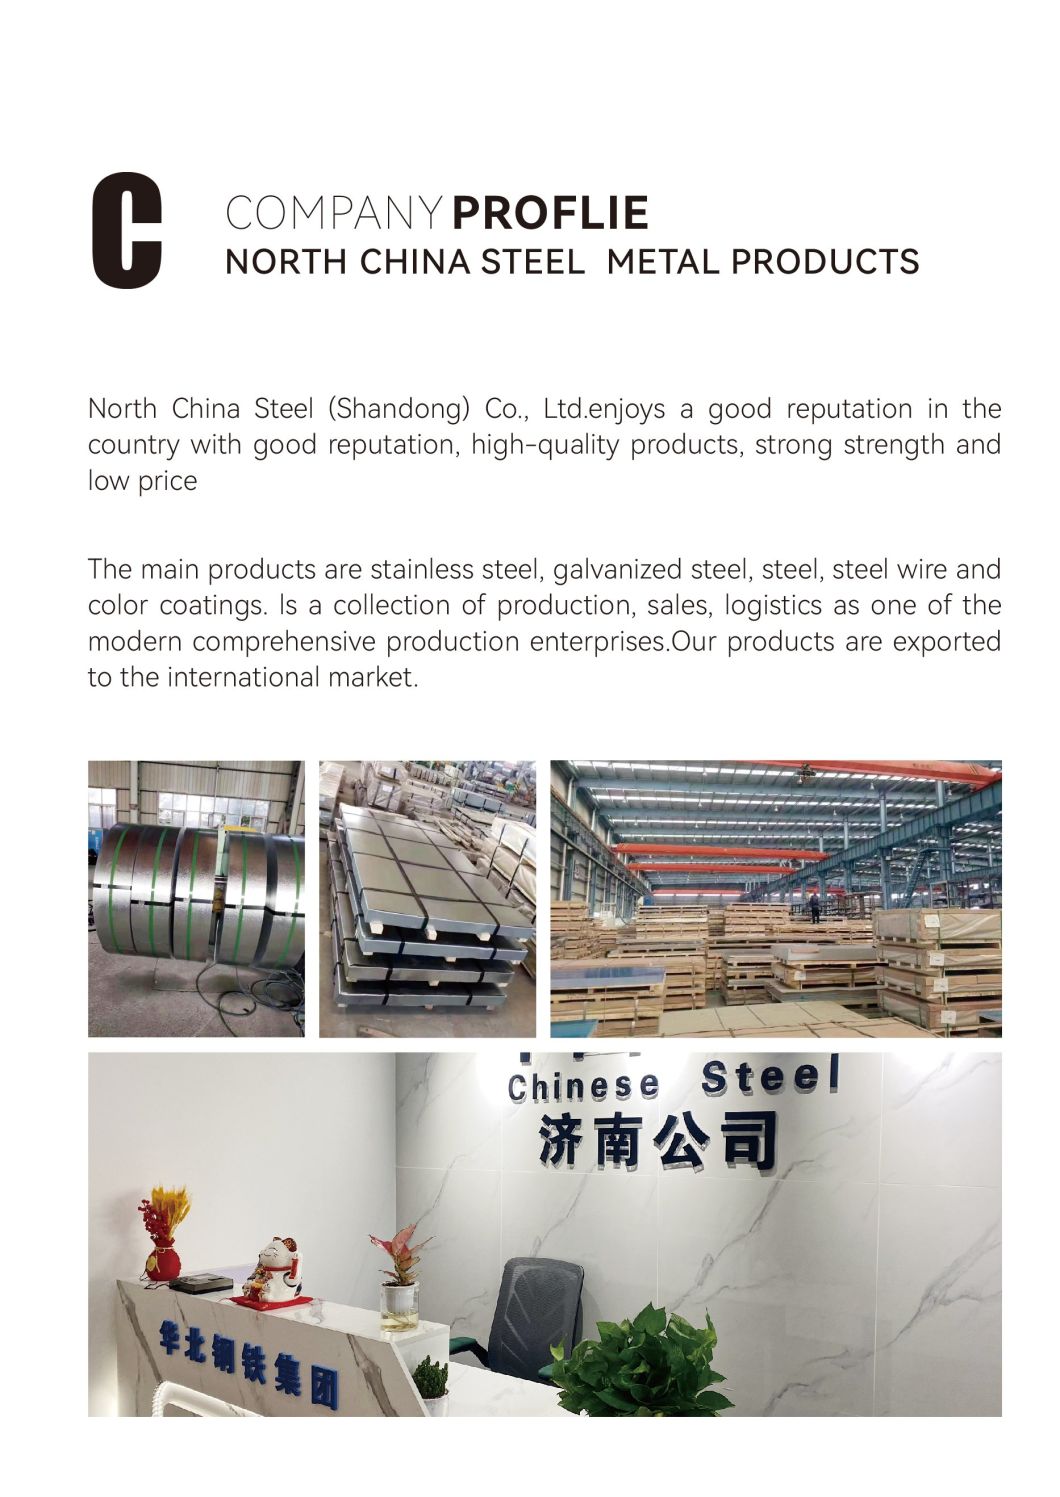 ASTM A276 S31803 Stainless Steel Round Rod/En24 Steel Round Bar